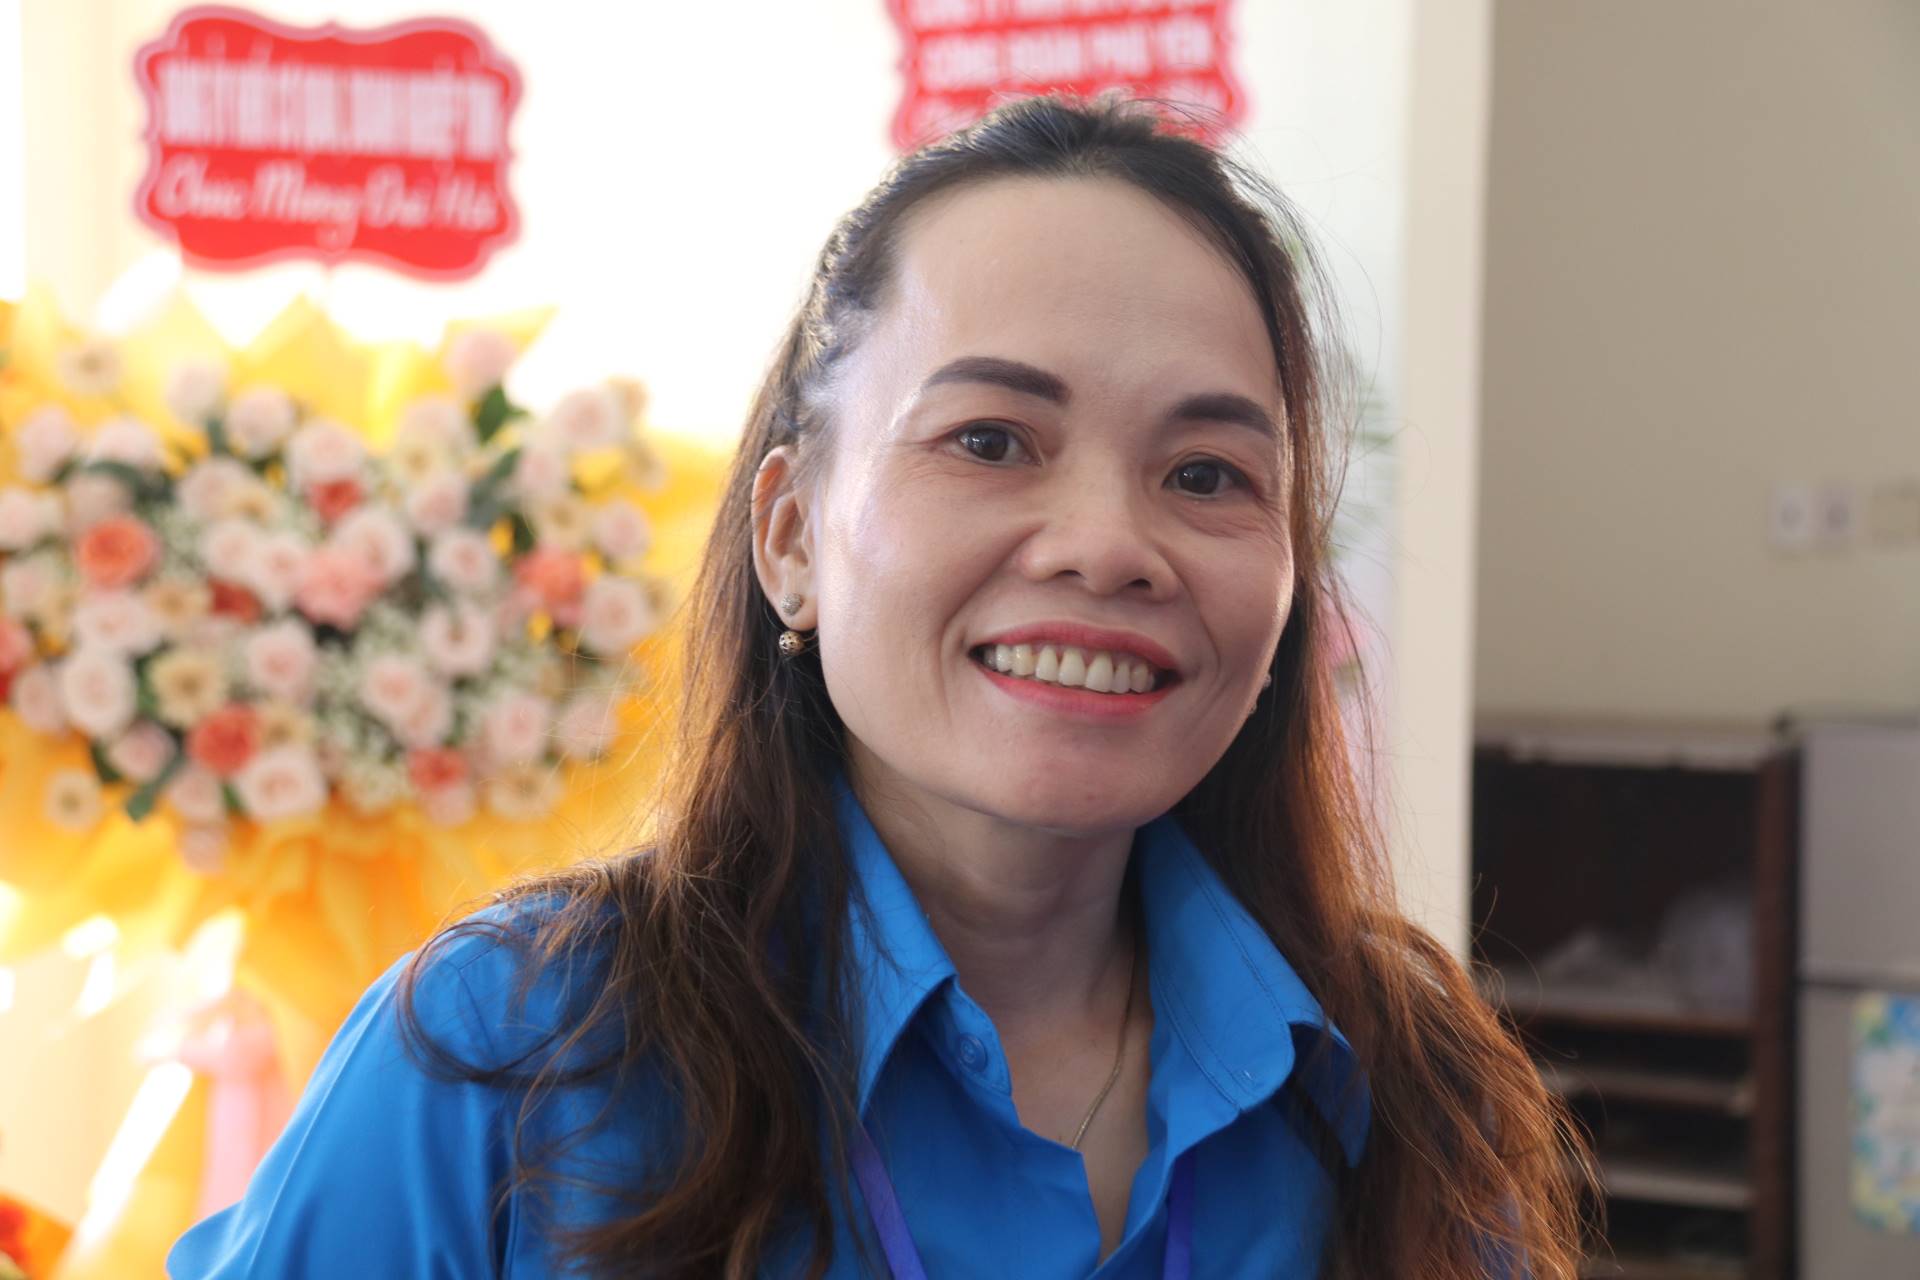 Đại biểu Nguyễn Thị Kim Tàu – đại diện cho tiếng nói công nhân lao động tỉnh Phú Yên. Ảnh: Phương Linh